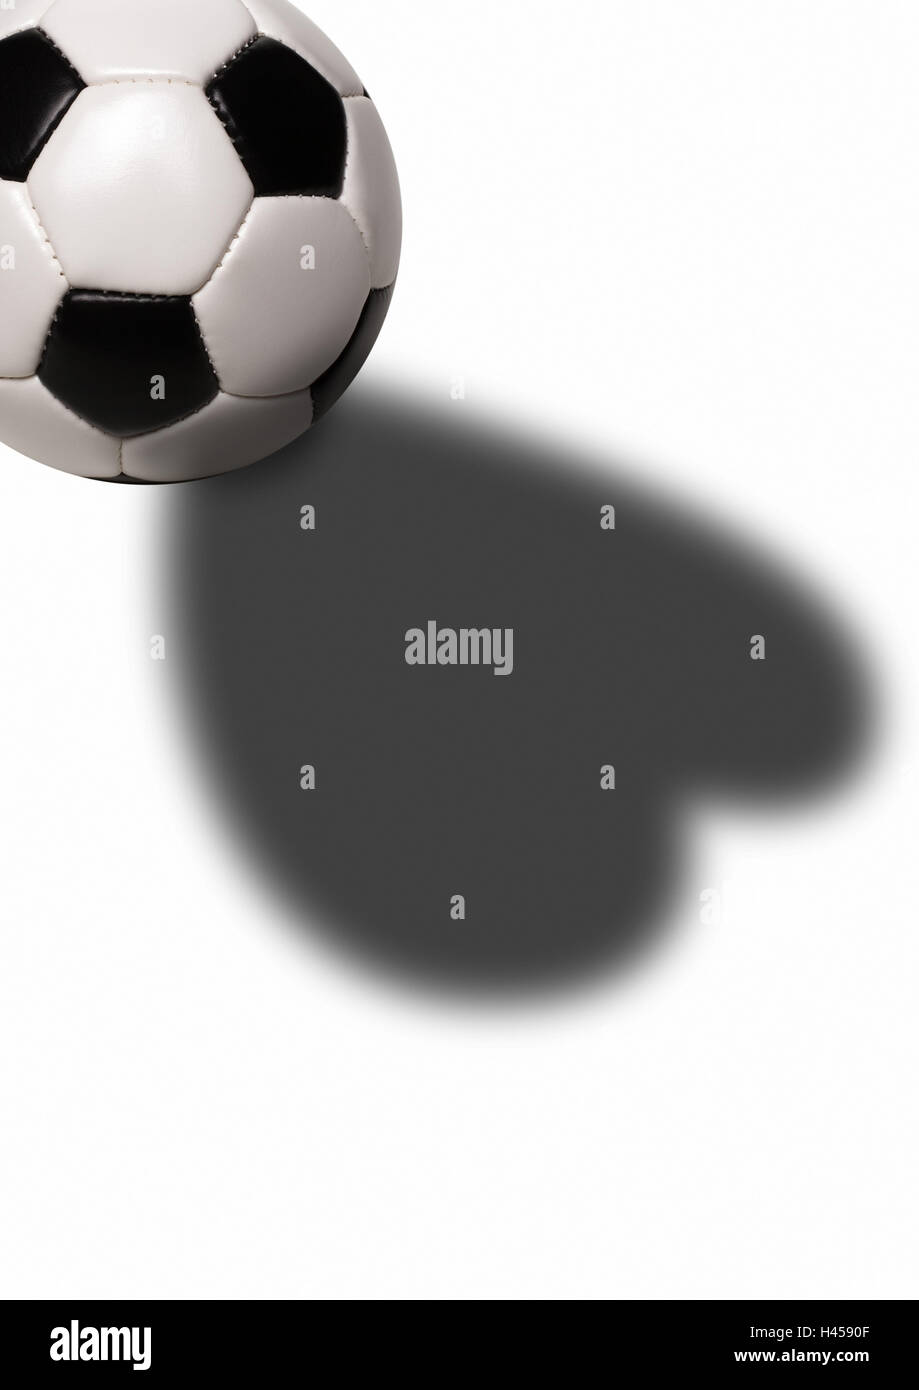 Fußball, Detail, Schatten, herzförmige, Ball, Lederball, schwarz/weiß, Symbol,